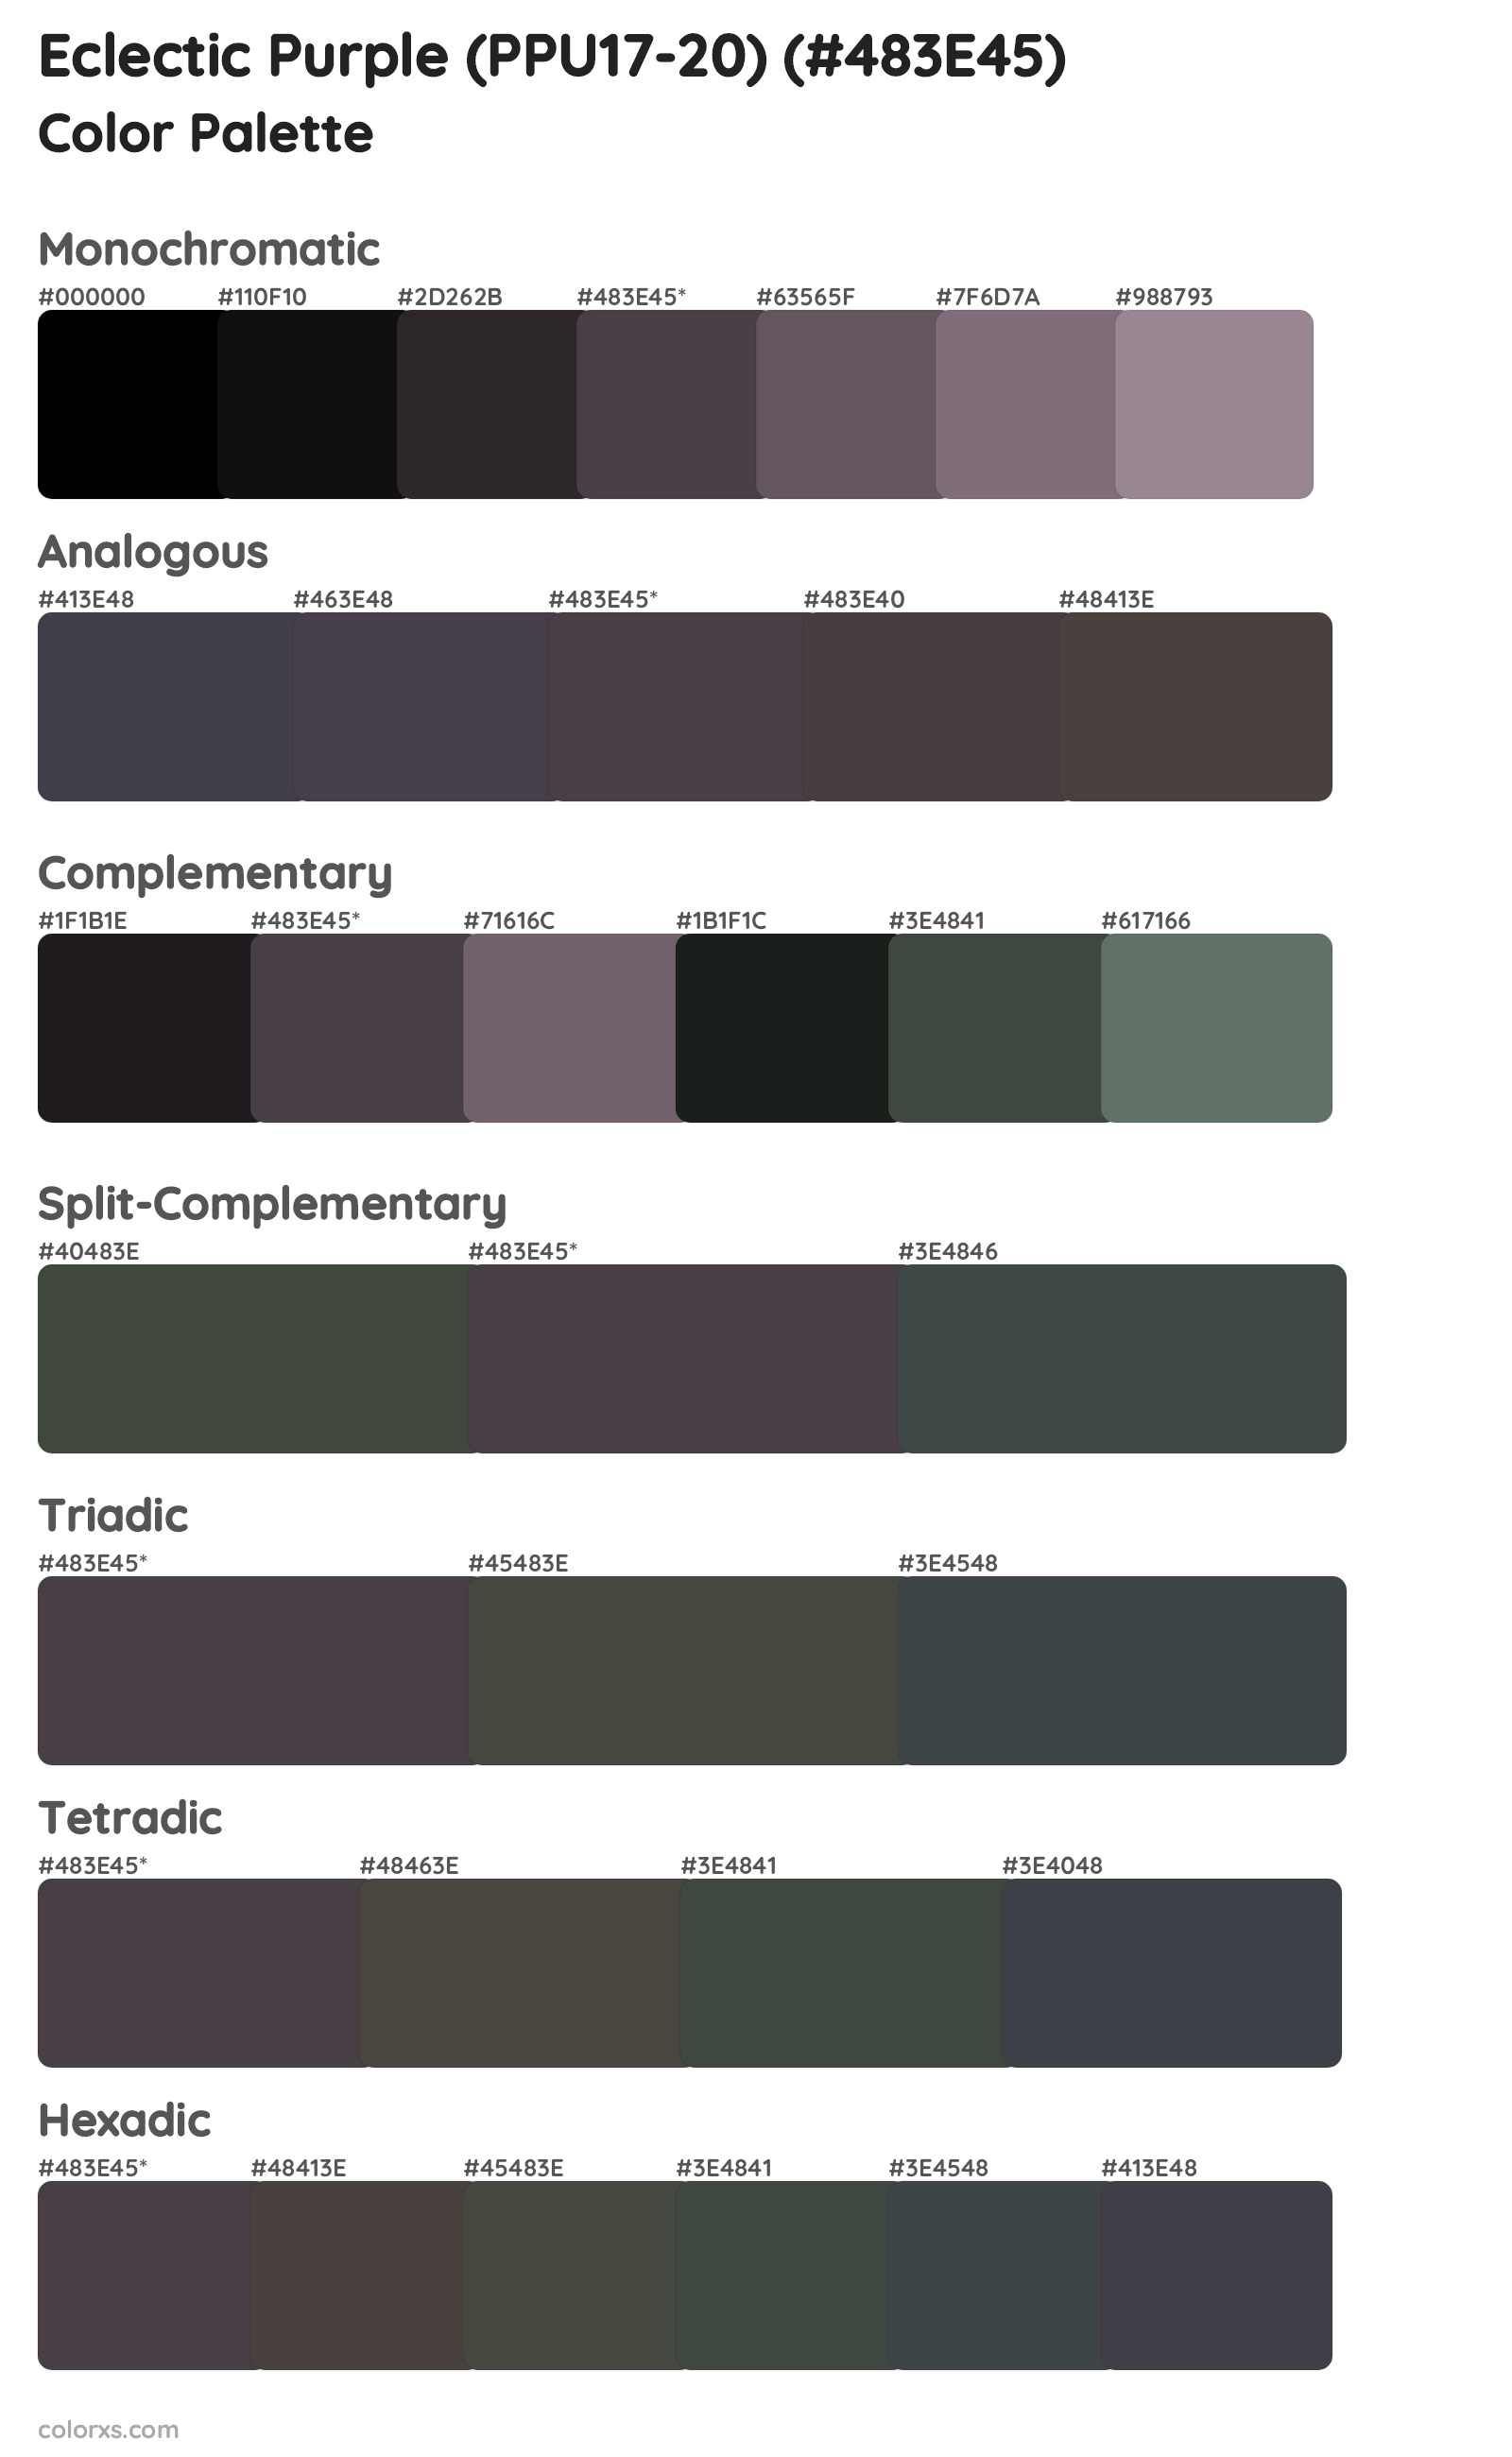 Eclectic Purple (PPU17-20) Color Scheme Palettes